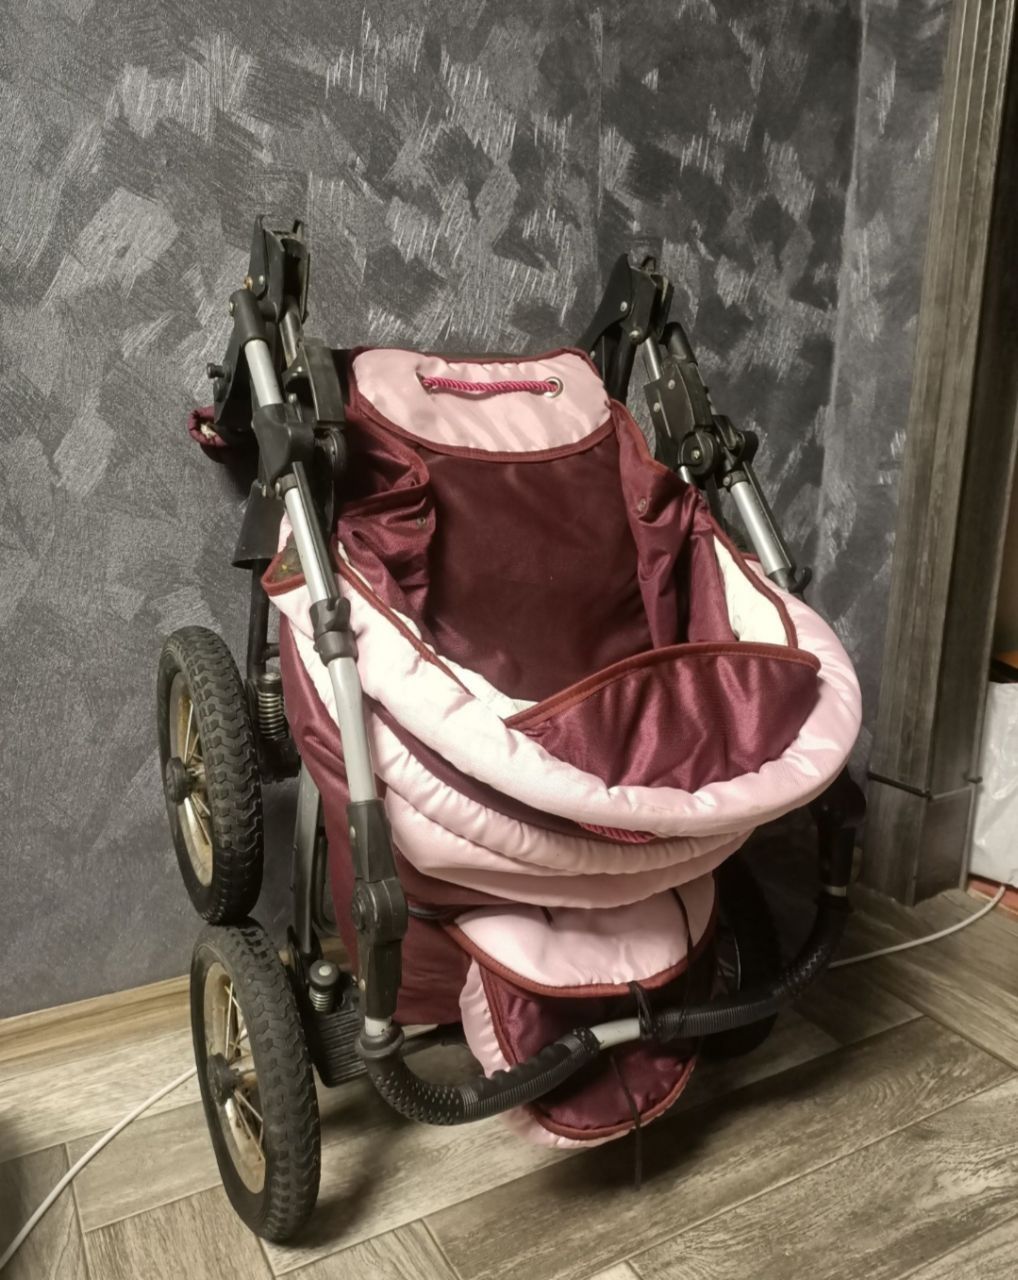 Детская коляска розовая